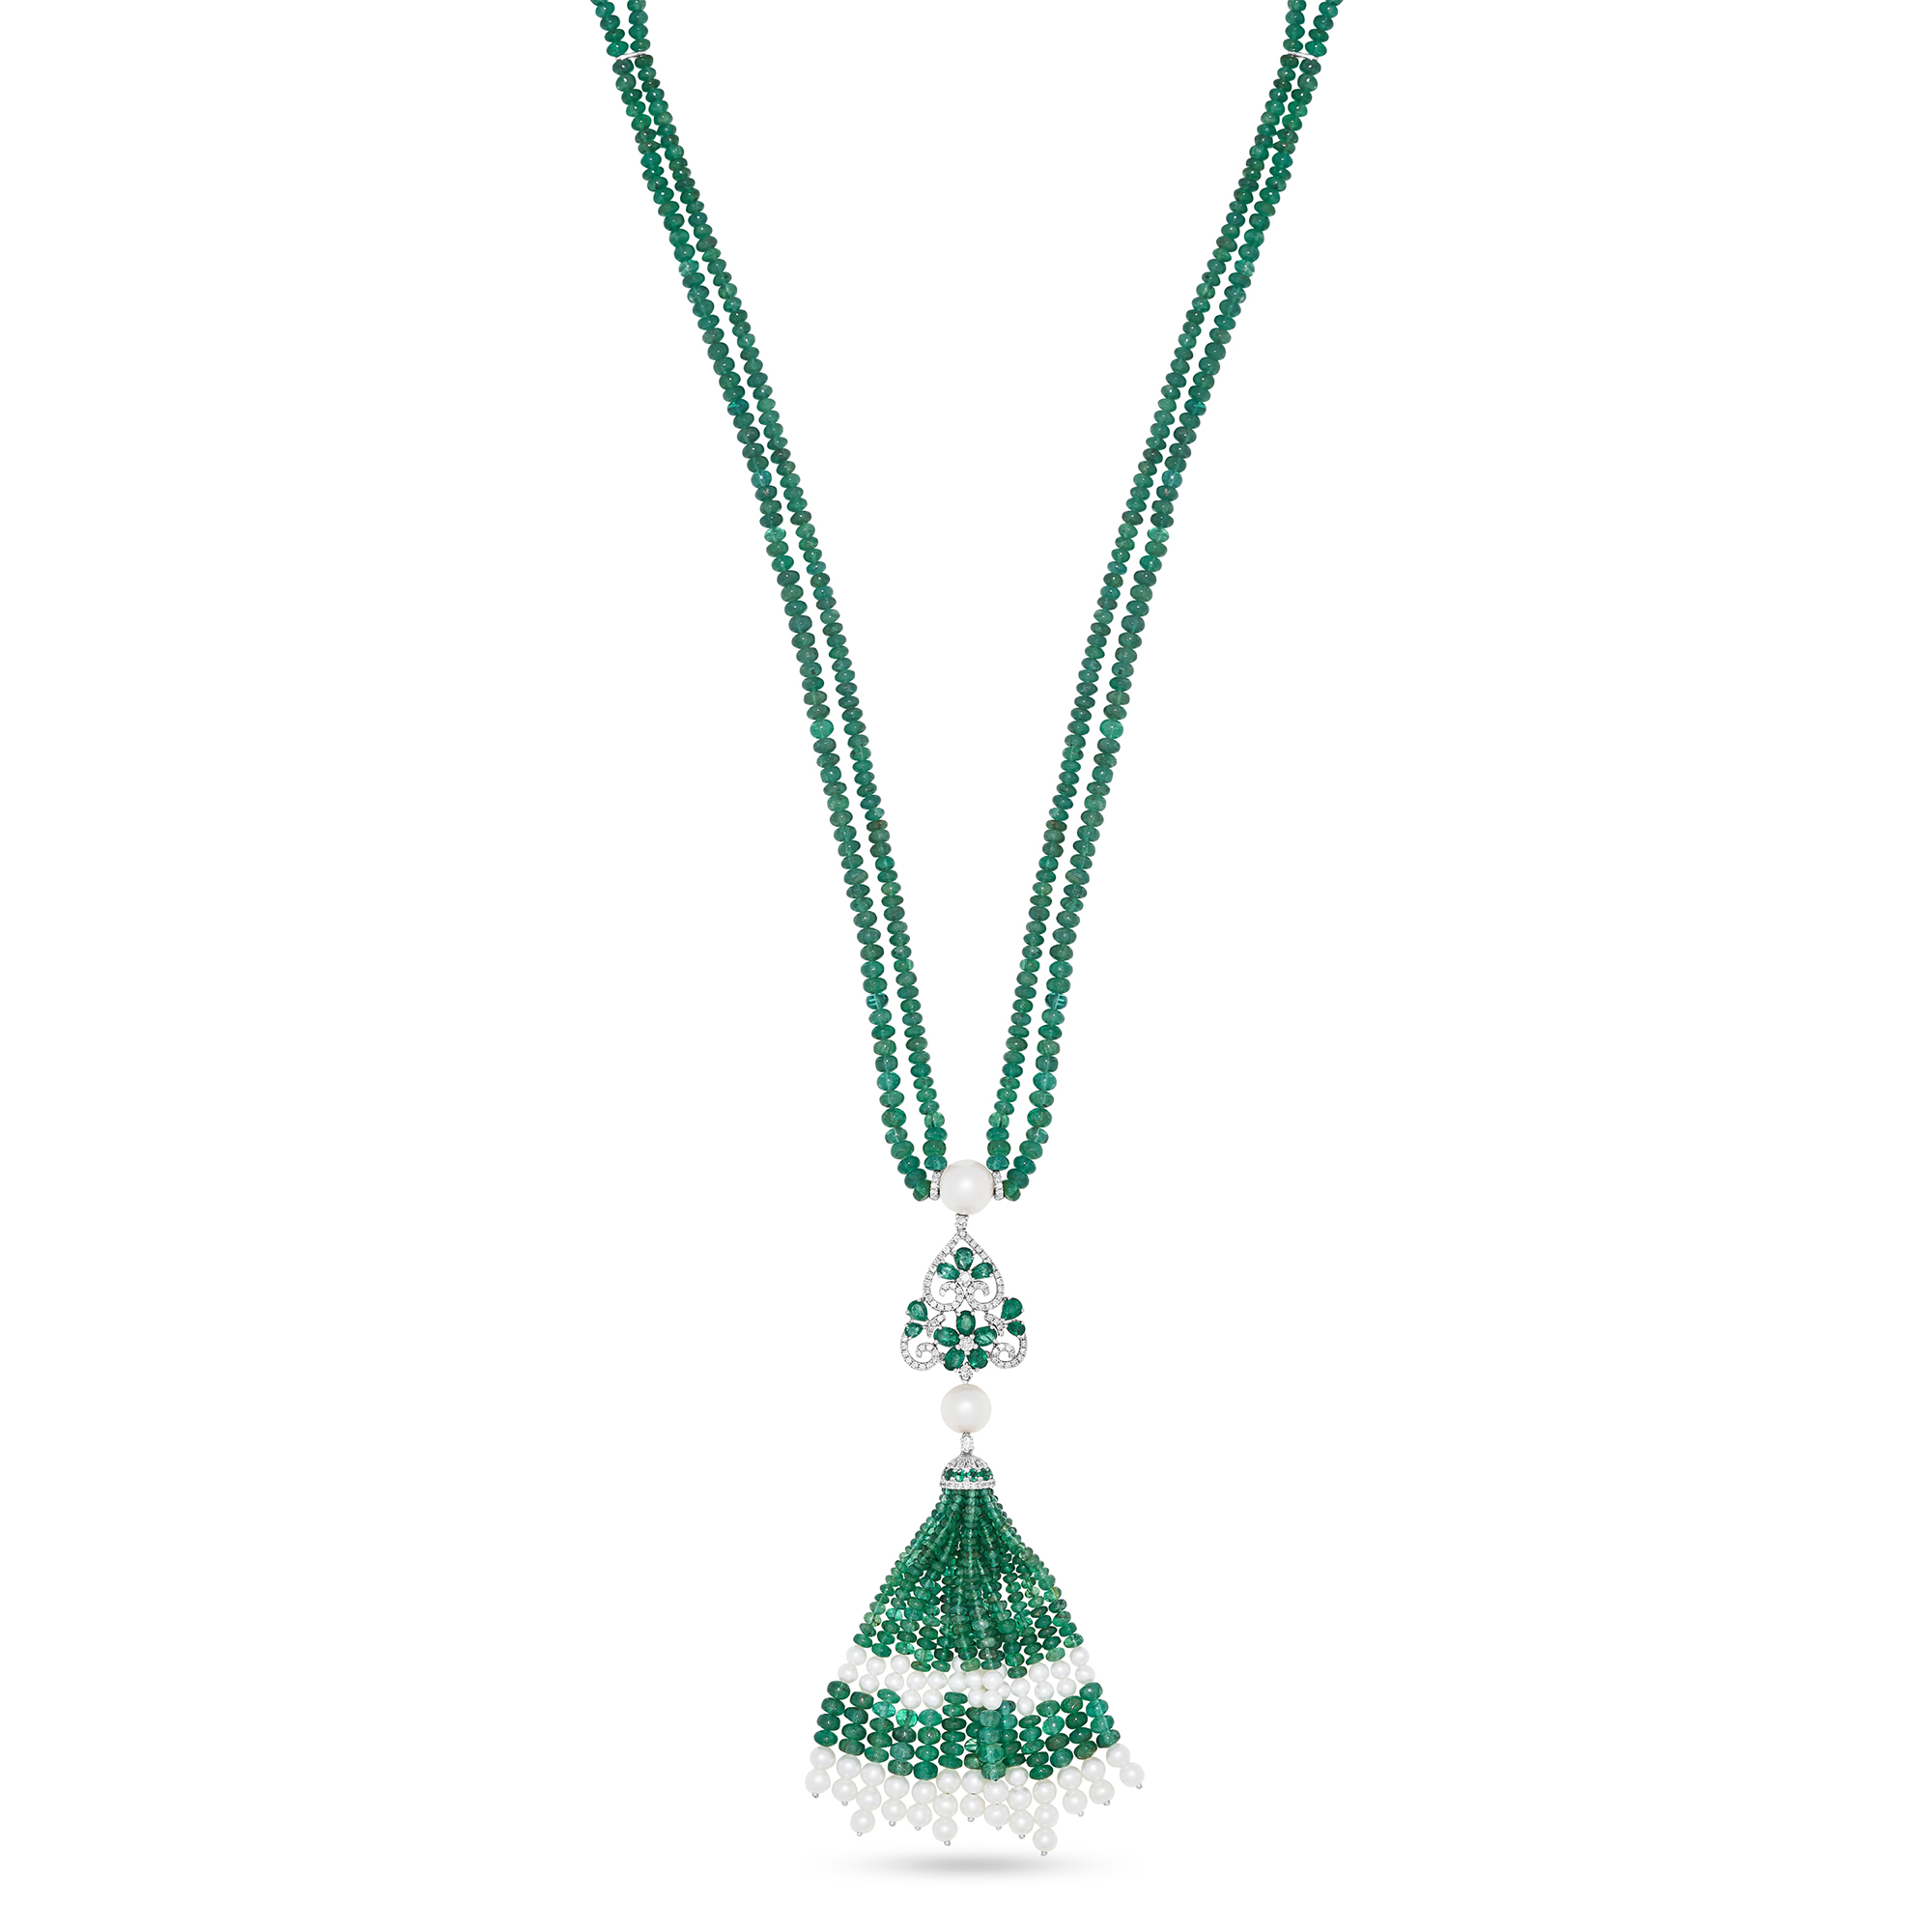 The Lady of Nature Necklace - Asma AlShaya Jewellery